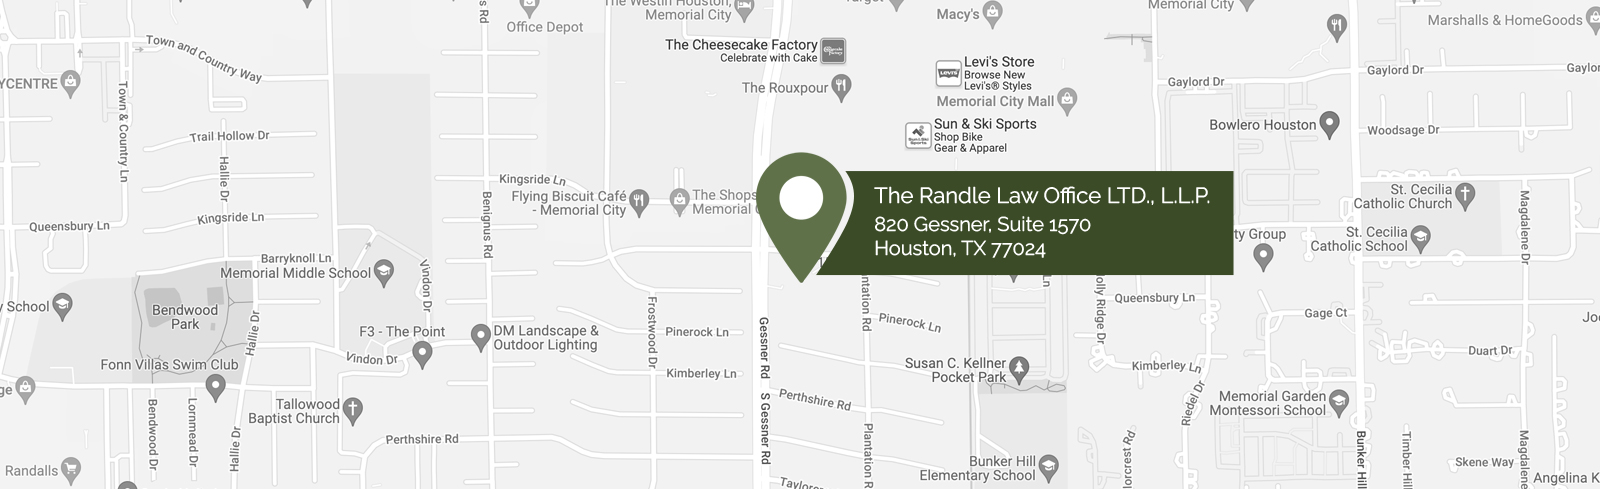 The Randle Law Office LTD., L.L.P.